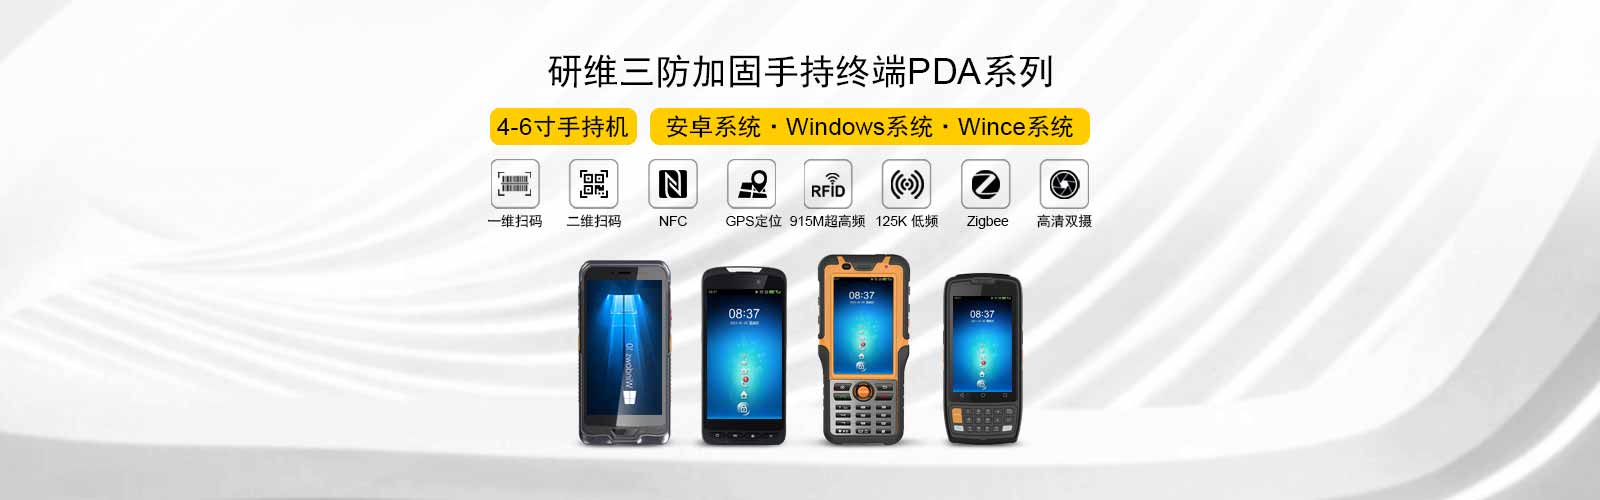 研维三防加固手持终端、PDA包括安卓系统、windows系统，支持一维扫码、二维扫码、NFC、gps北斗定位、915M超高频、125k低频、zigebee、高清双摄